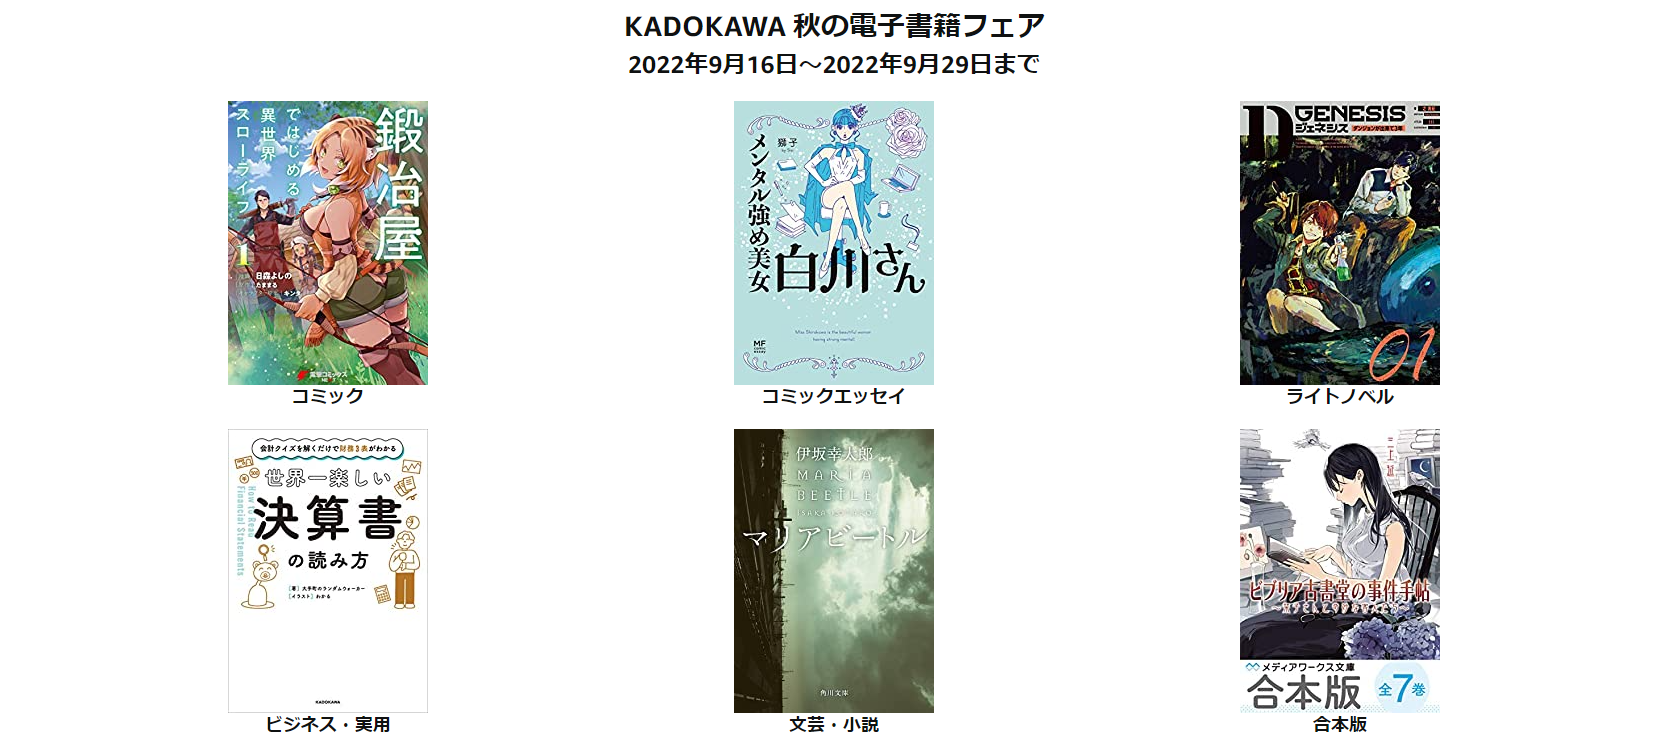 【Amazon】KADOKAWA 秋の電子書籍フェアが開催中。おすすめビジネス書5選を紹介。9月29日まで【Kindle】